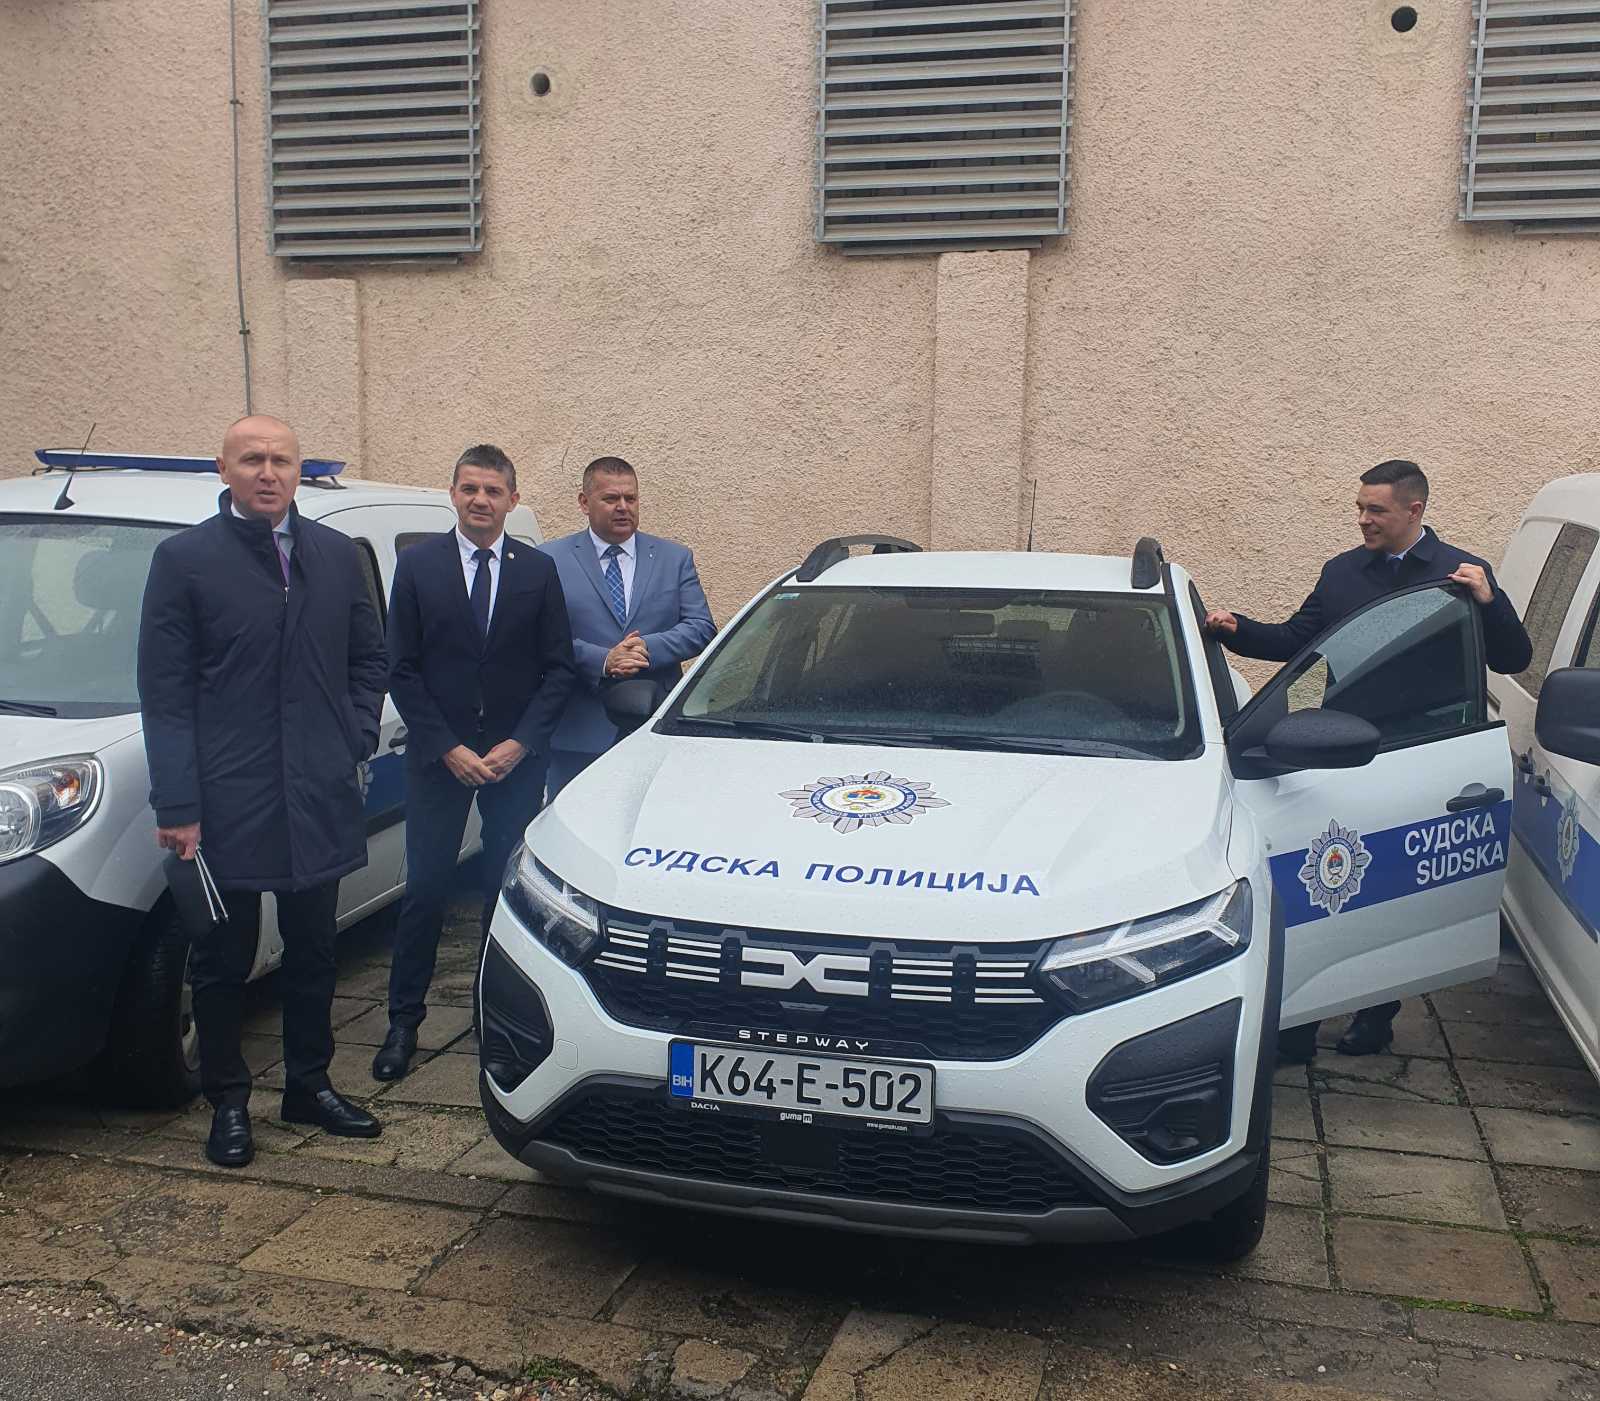  Bukejlović uručio vozilo sudskoj policiji 